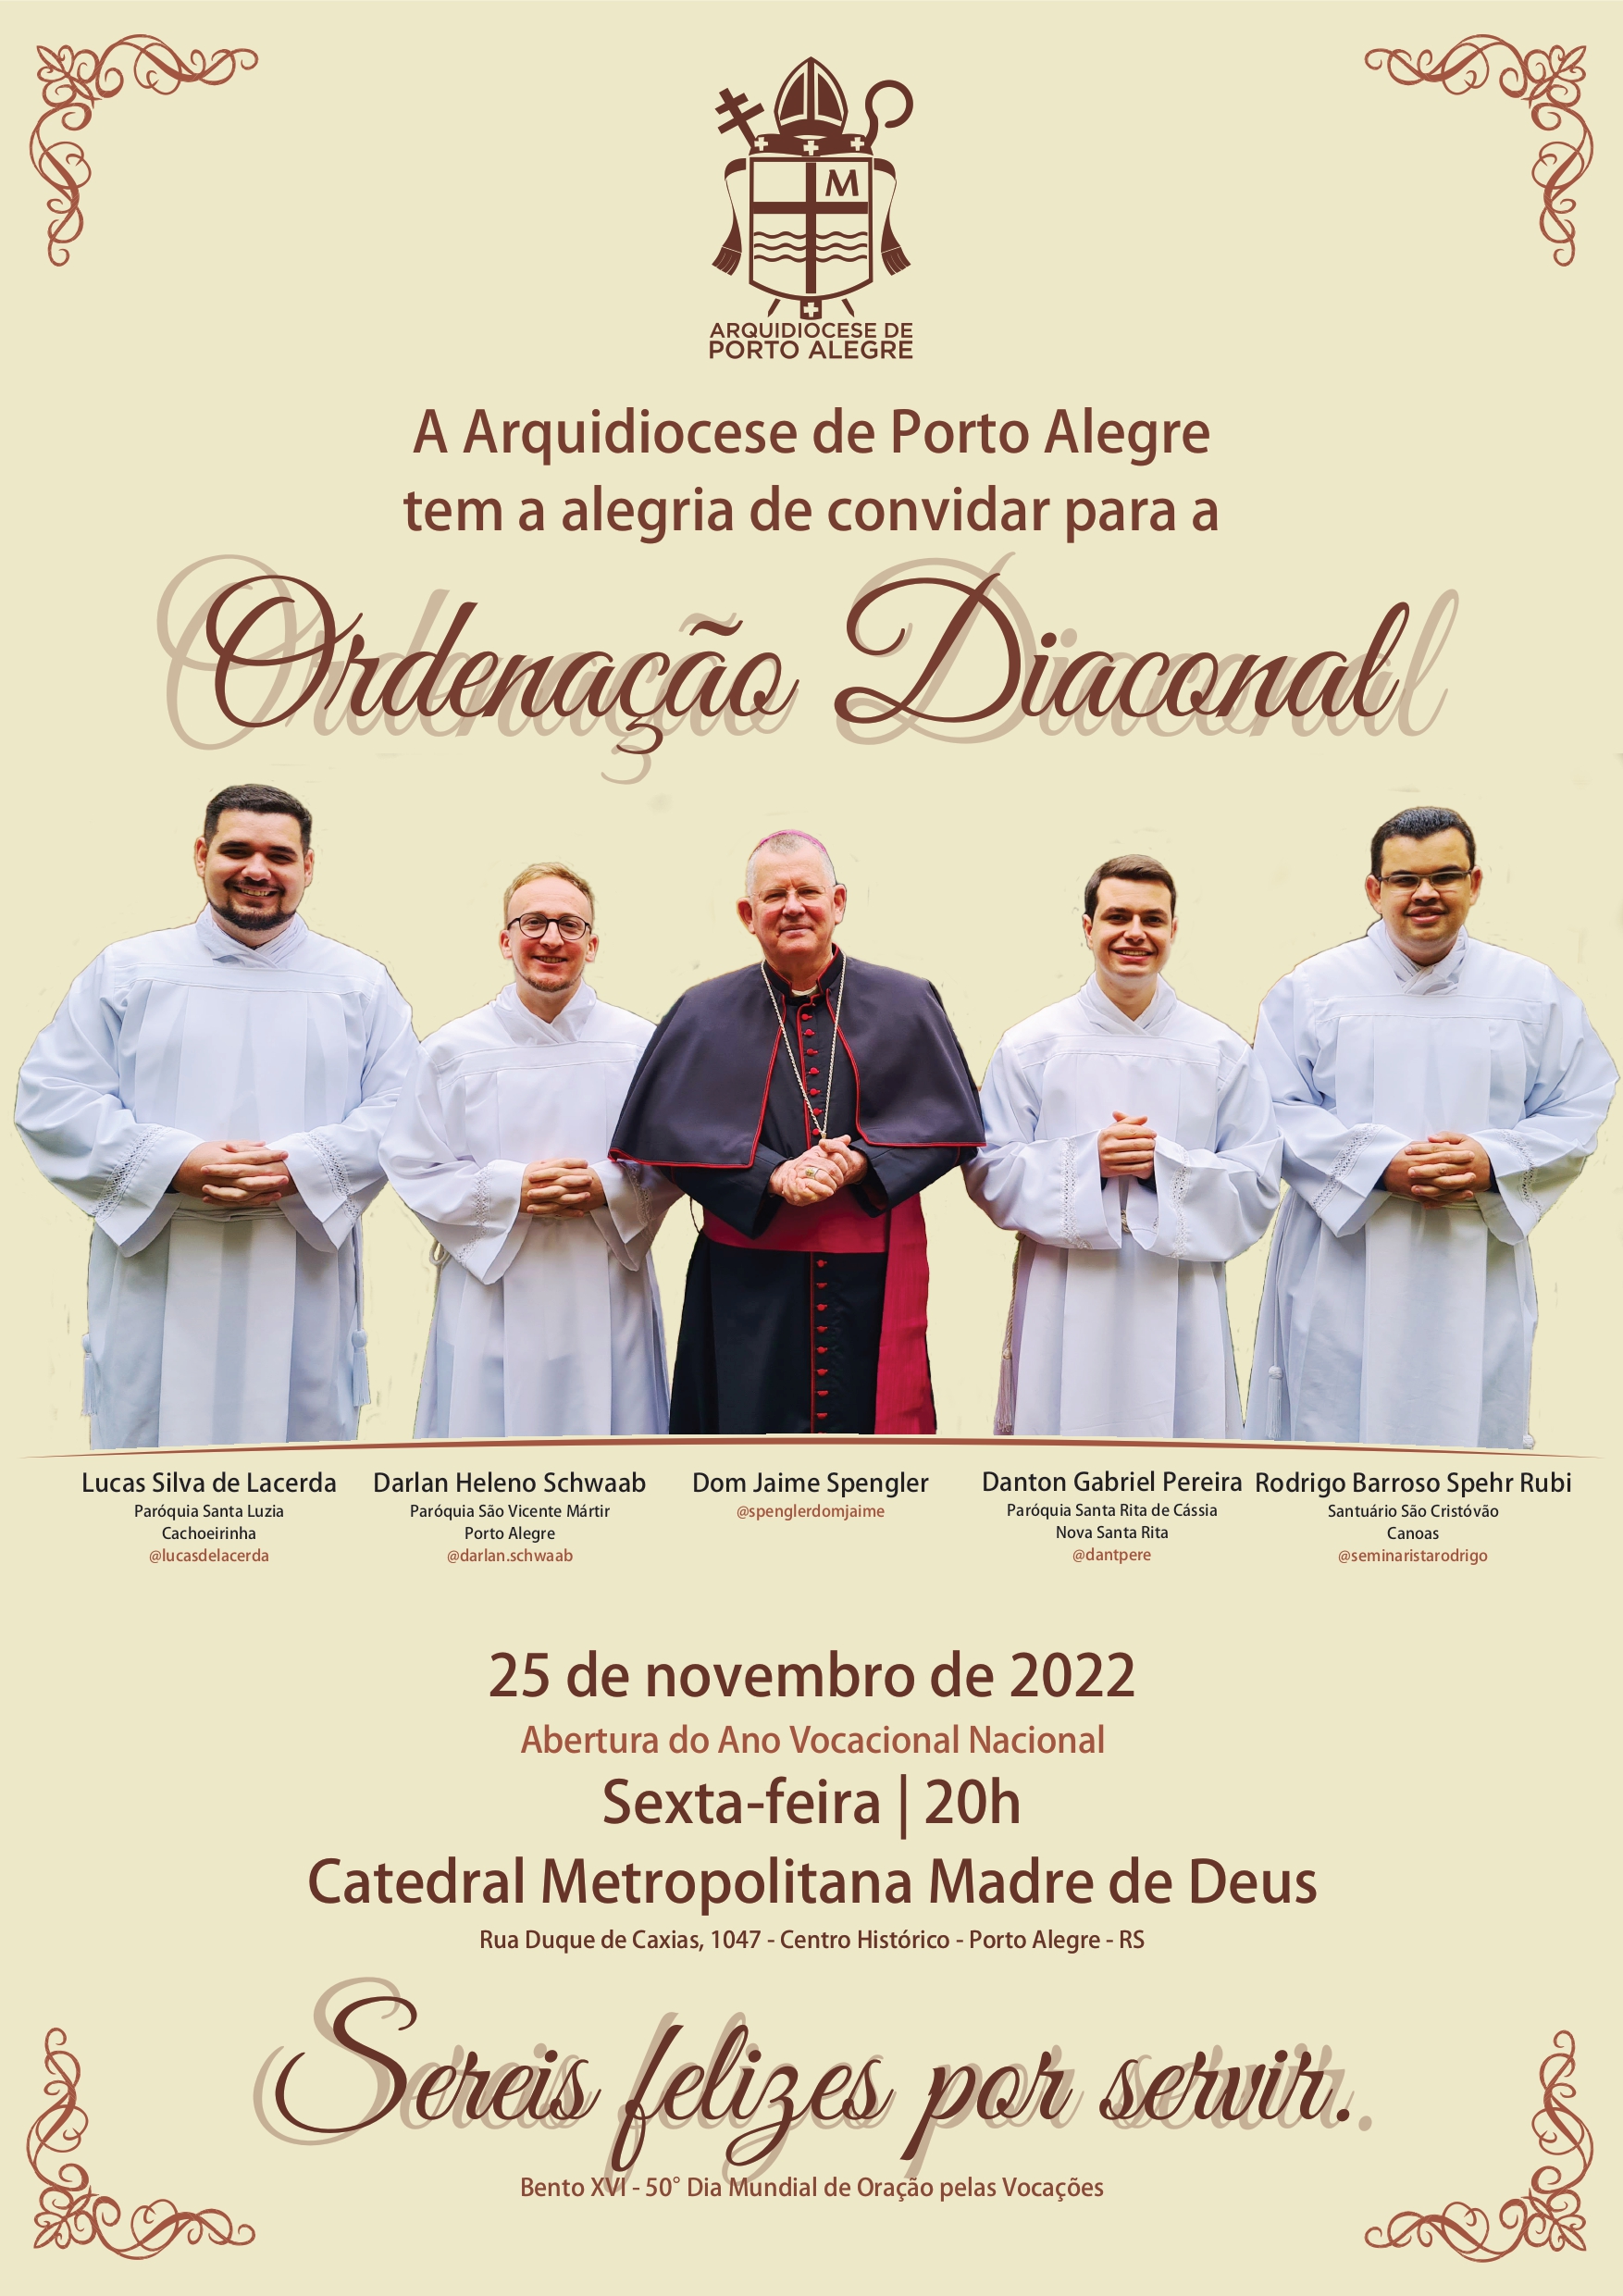 Quatro seminaristas da Arquidiocese de Porto Alegre serão ordenados Diáconos em novembro